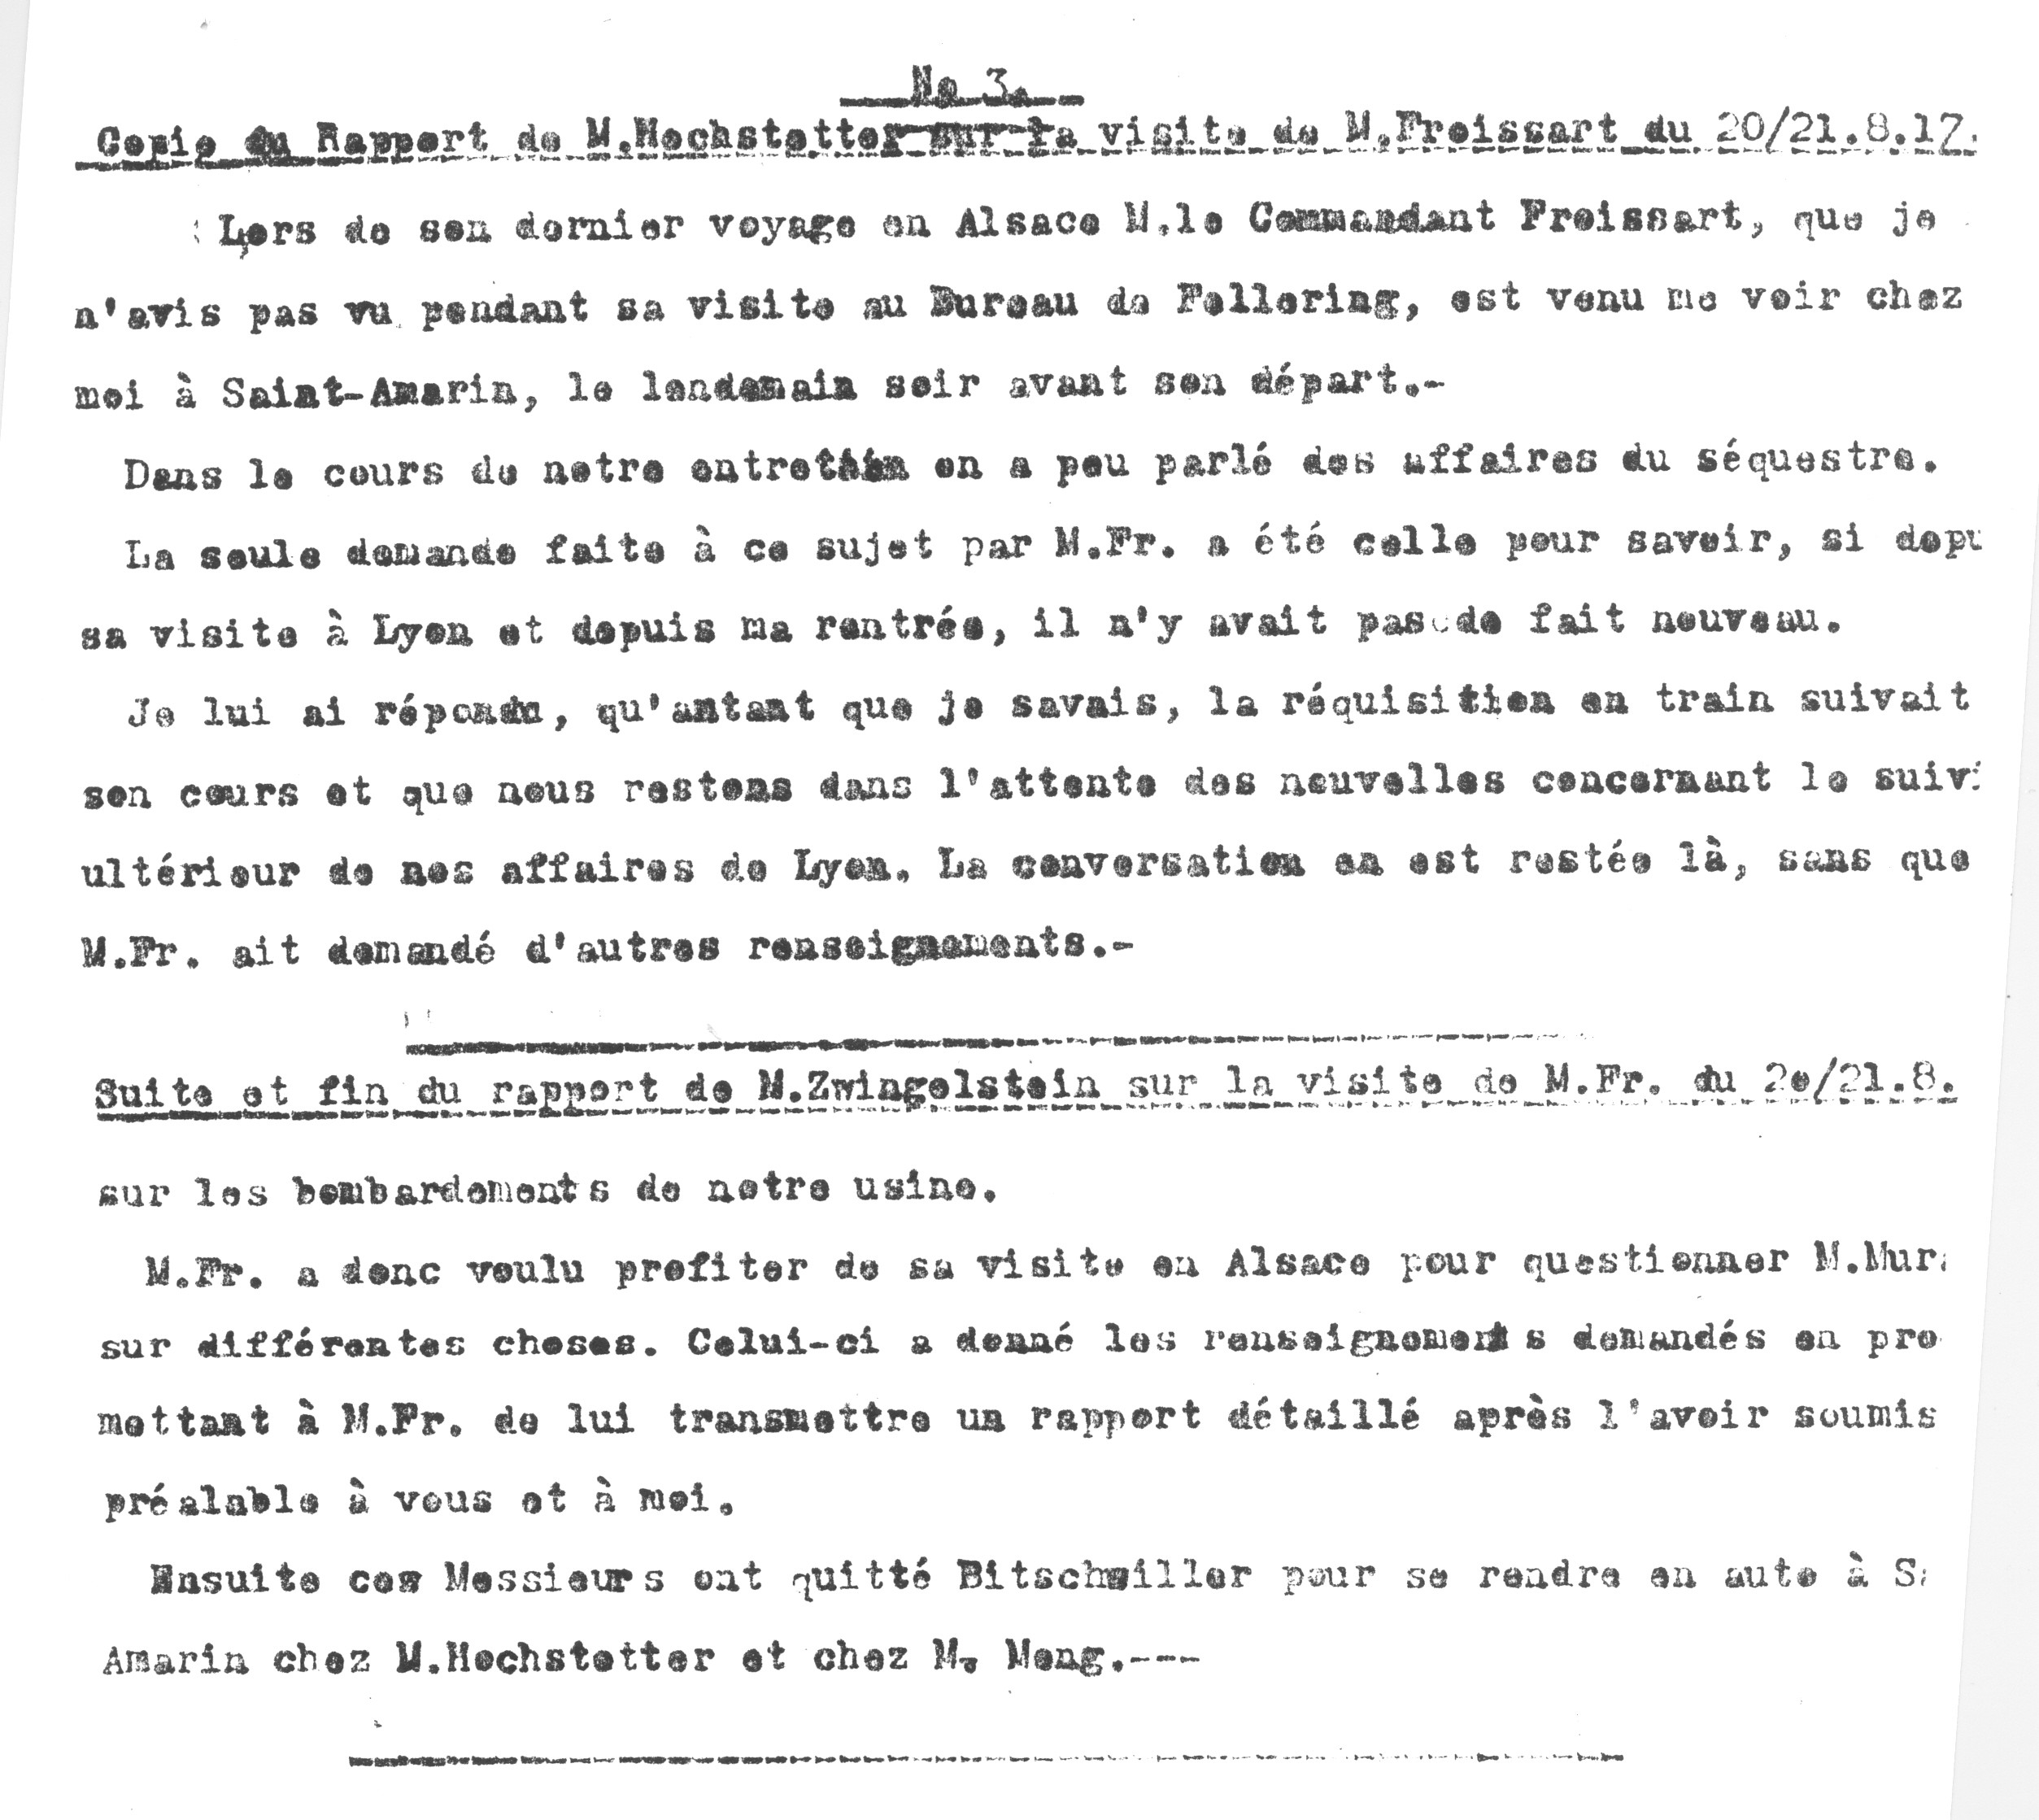 1917 – Copie du rapport de M. Zwingelstein sur la visite de M. Froissart des 20/21 Août 1917